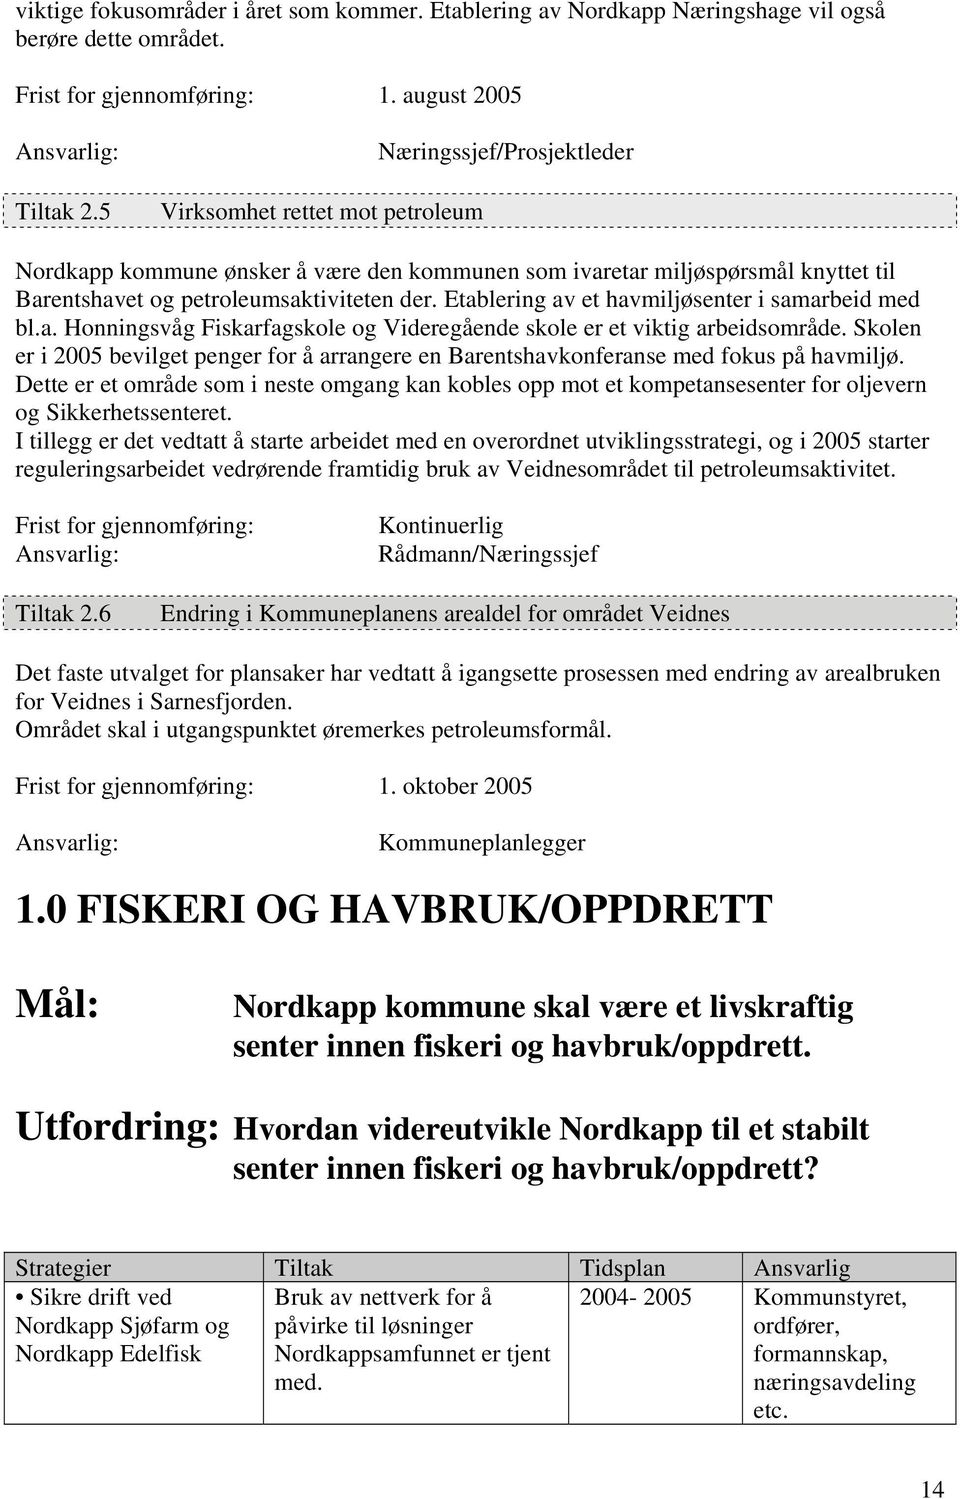 Etablering av et havmiljøsenter i samarbeid med bl.a. Honningsvåg Fiskarfagskole og Videregående skole er et viktig arbeidsområde.